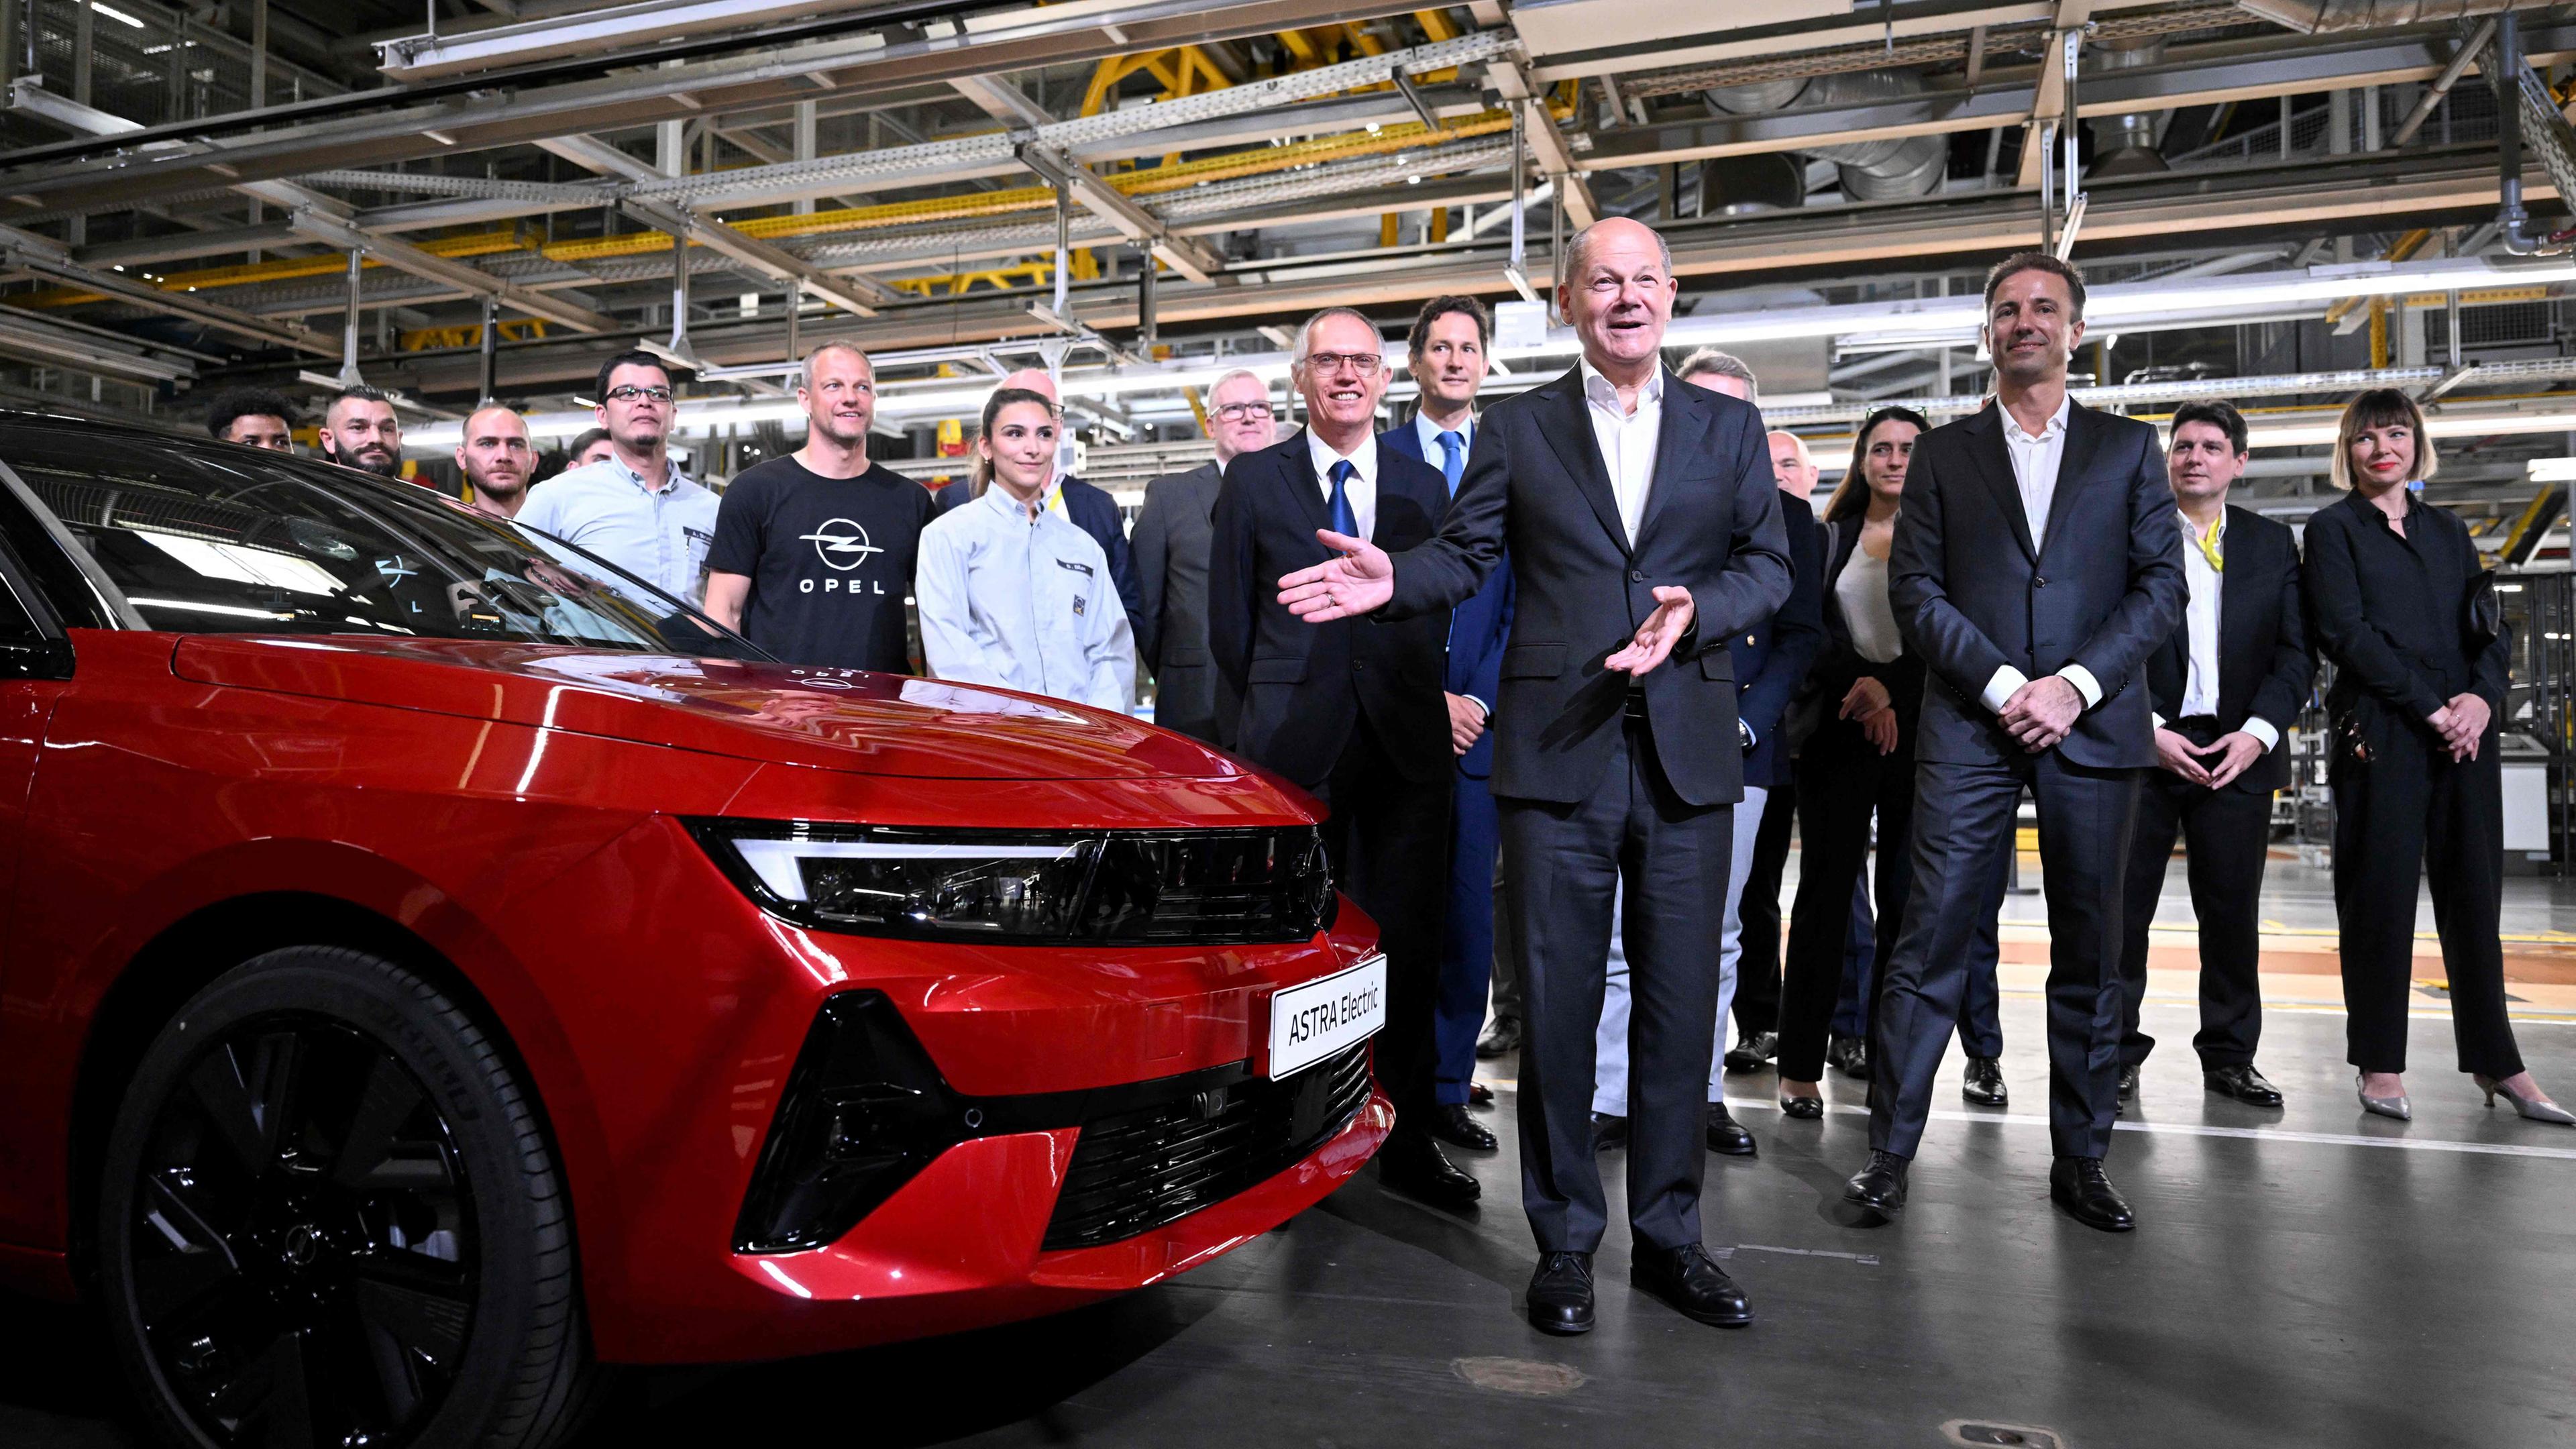 Olaf Scholz beim Festakt zu 125 Jahre Fahrzeugbau bei Opel